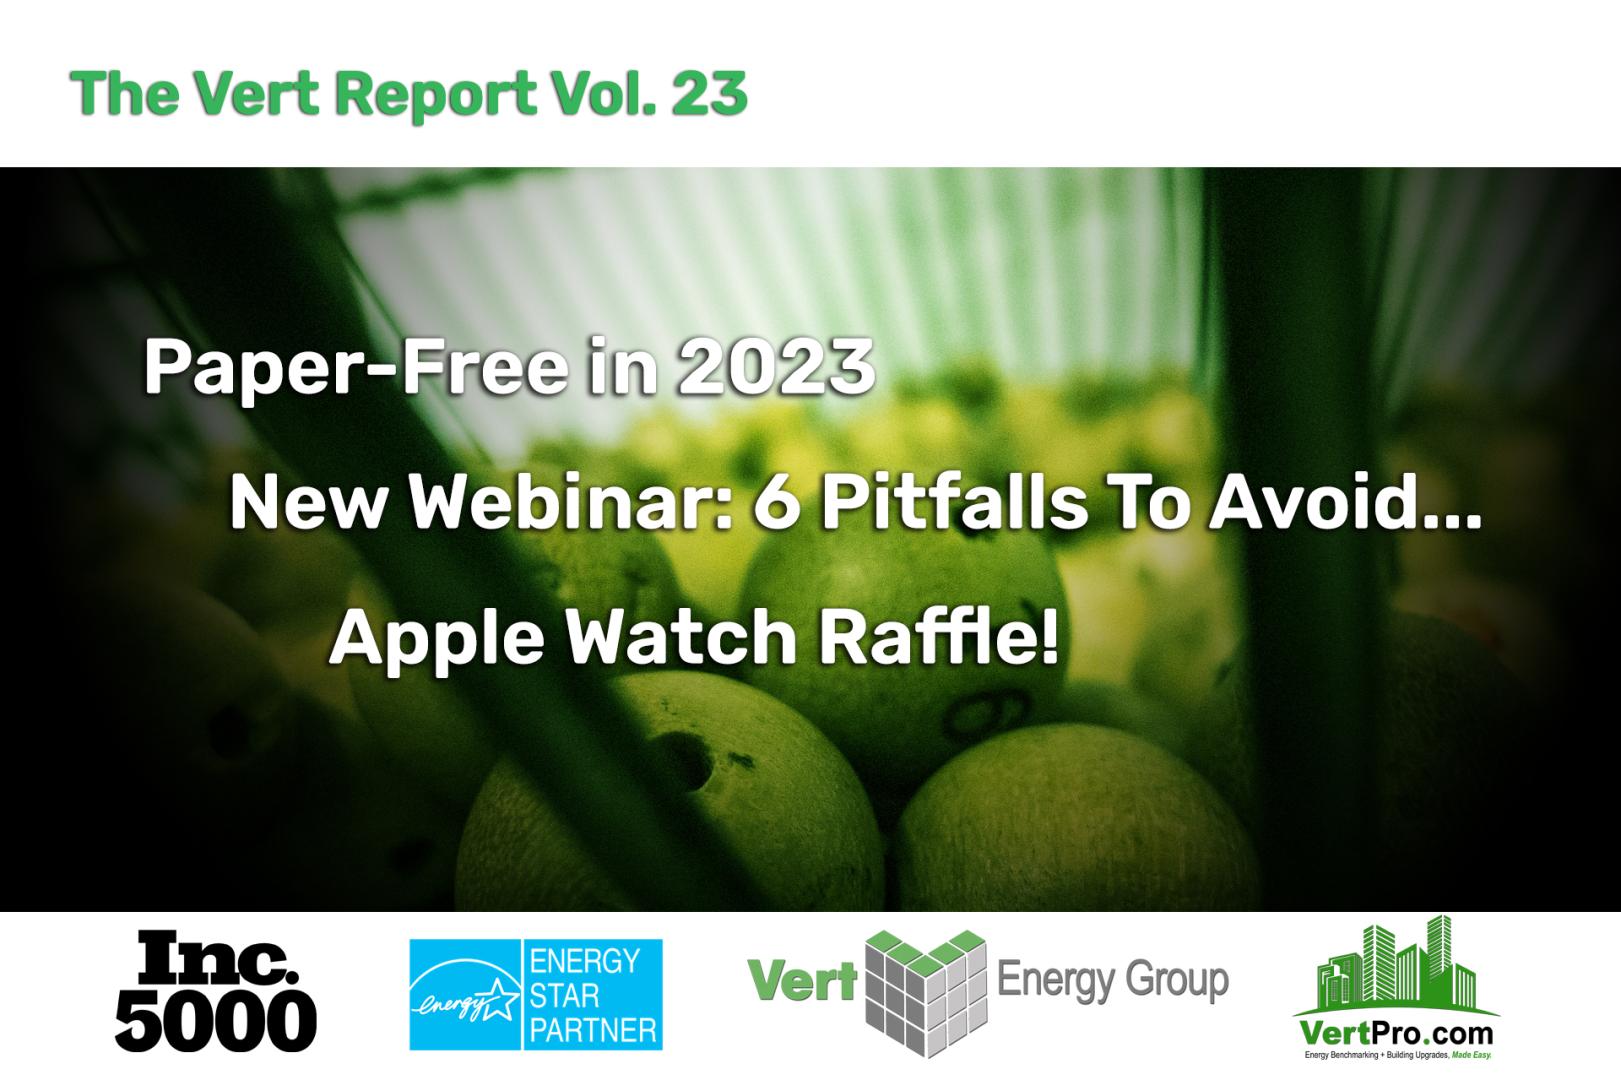 Vert Energy Group – Paper-free in 2023